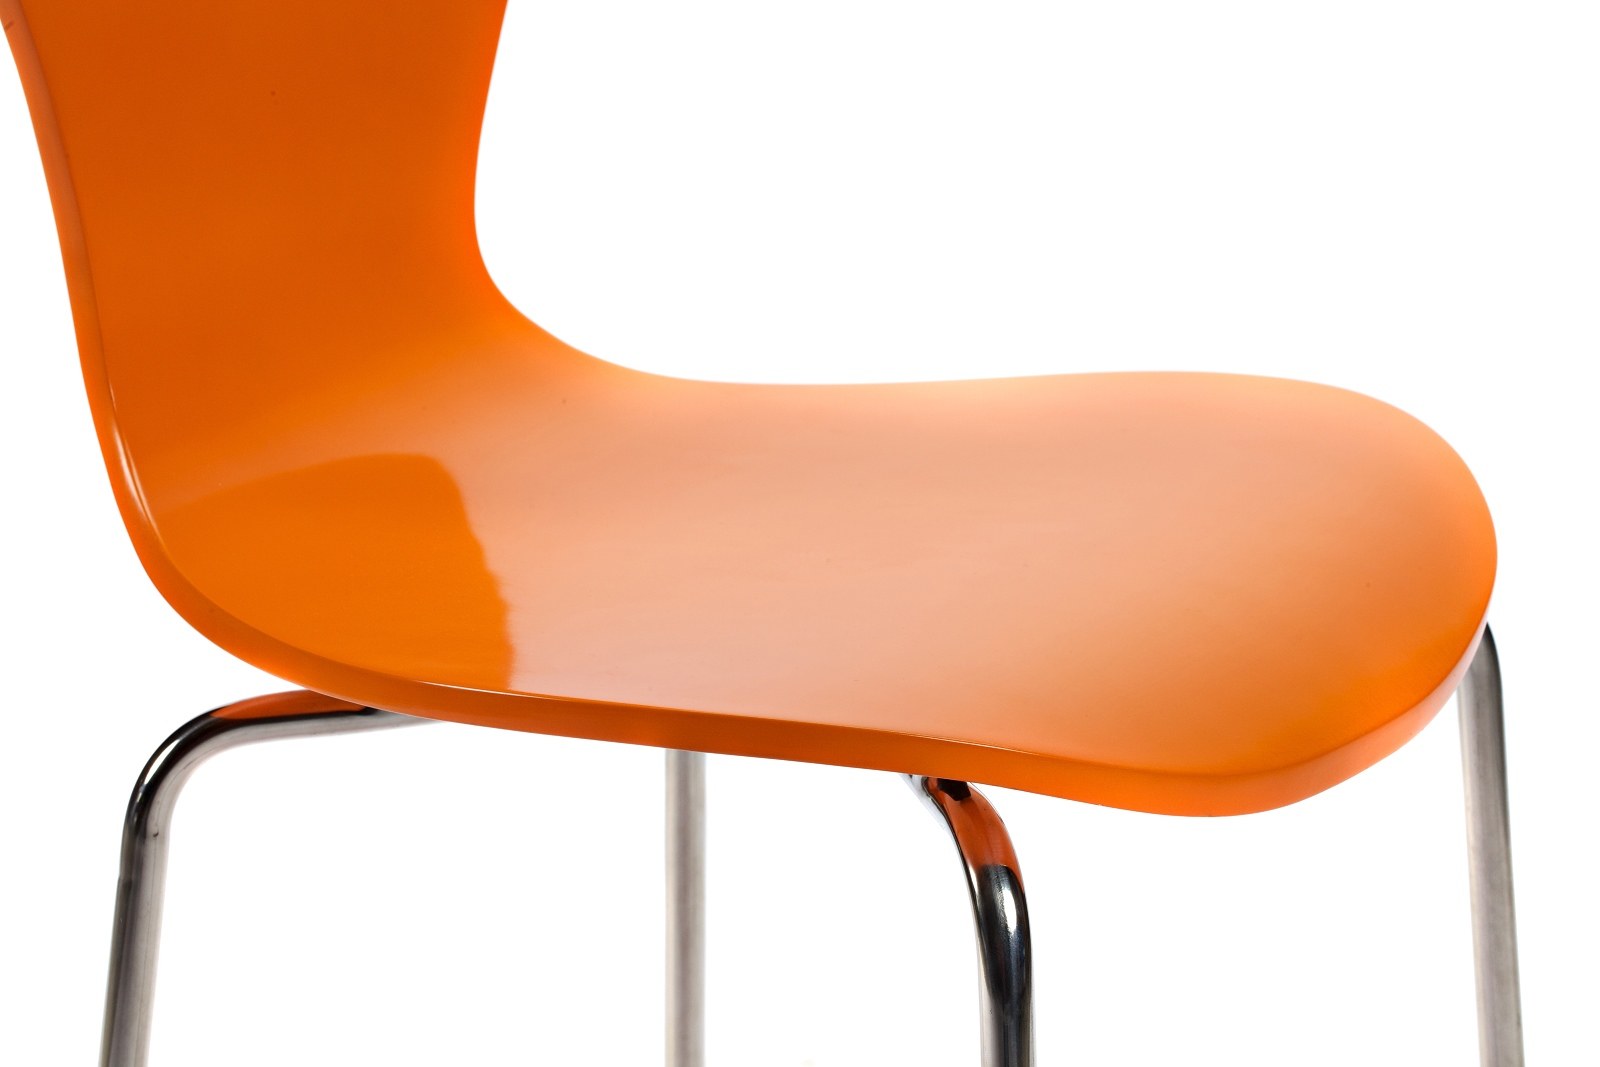 Стул Ant Chair оранжевый металл. Стул Rich оранжевый (алюмин.ножки). Стул кухонный металлический ножки хром красный пластиковый (арт 6632). Стул (b68 or, металл/экокожа, оранжевый, s).